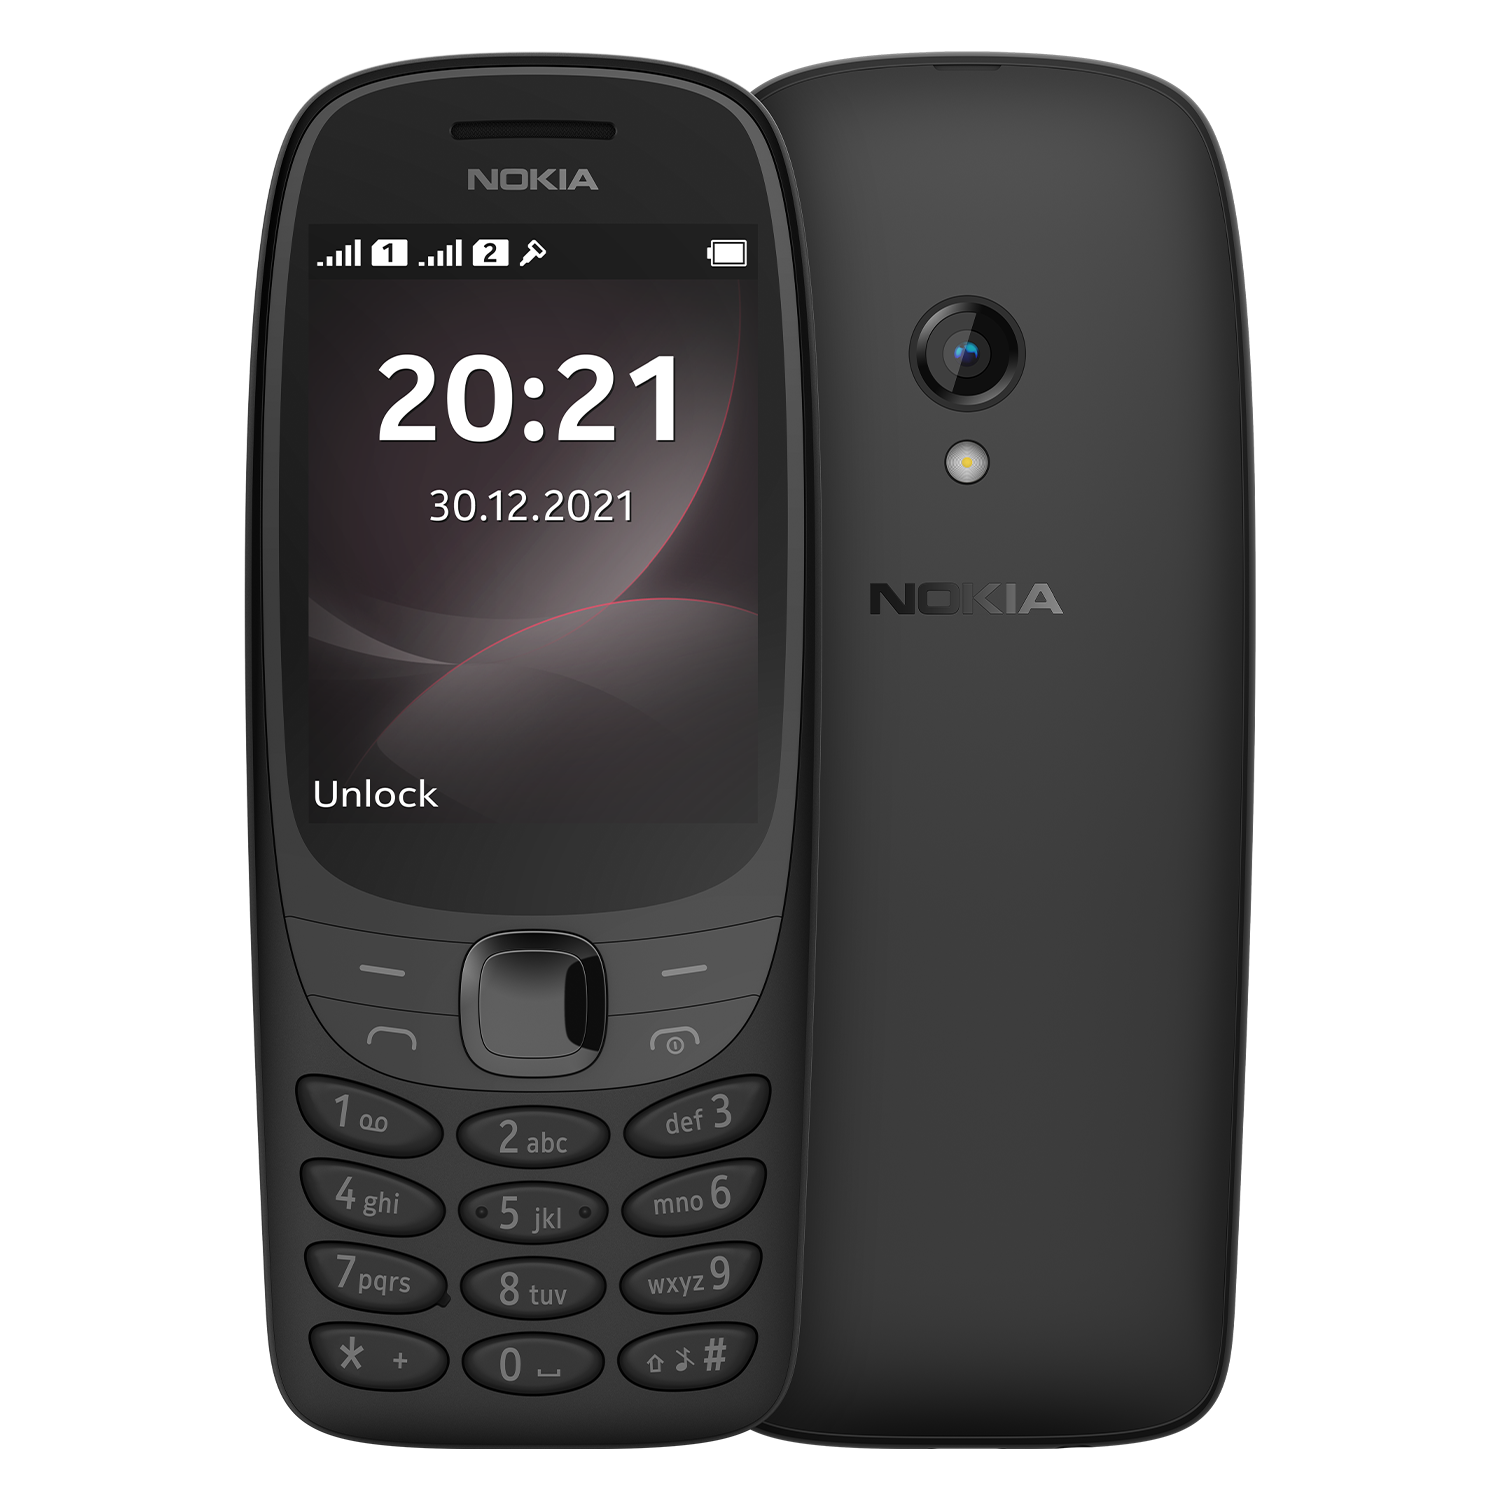 Celular Nokia 6310 4G 32GB / Dual SIM / Tela 2.8"/ Whatsapp Wifi / Bluetooth / Câmera 0.3 MP - Preto